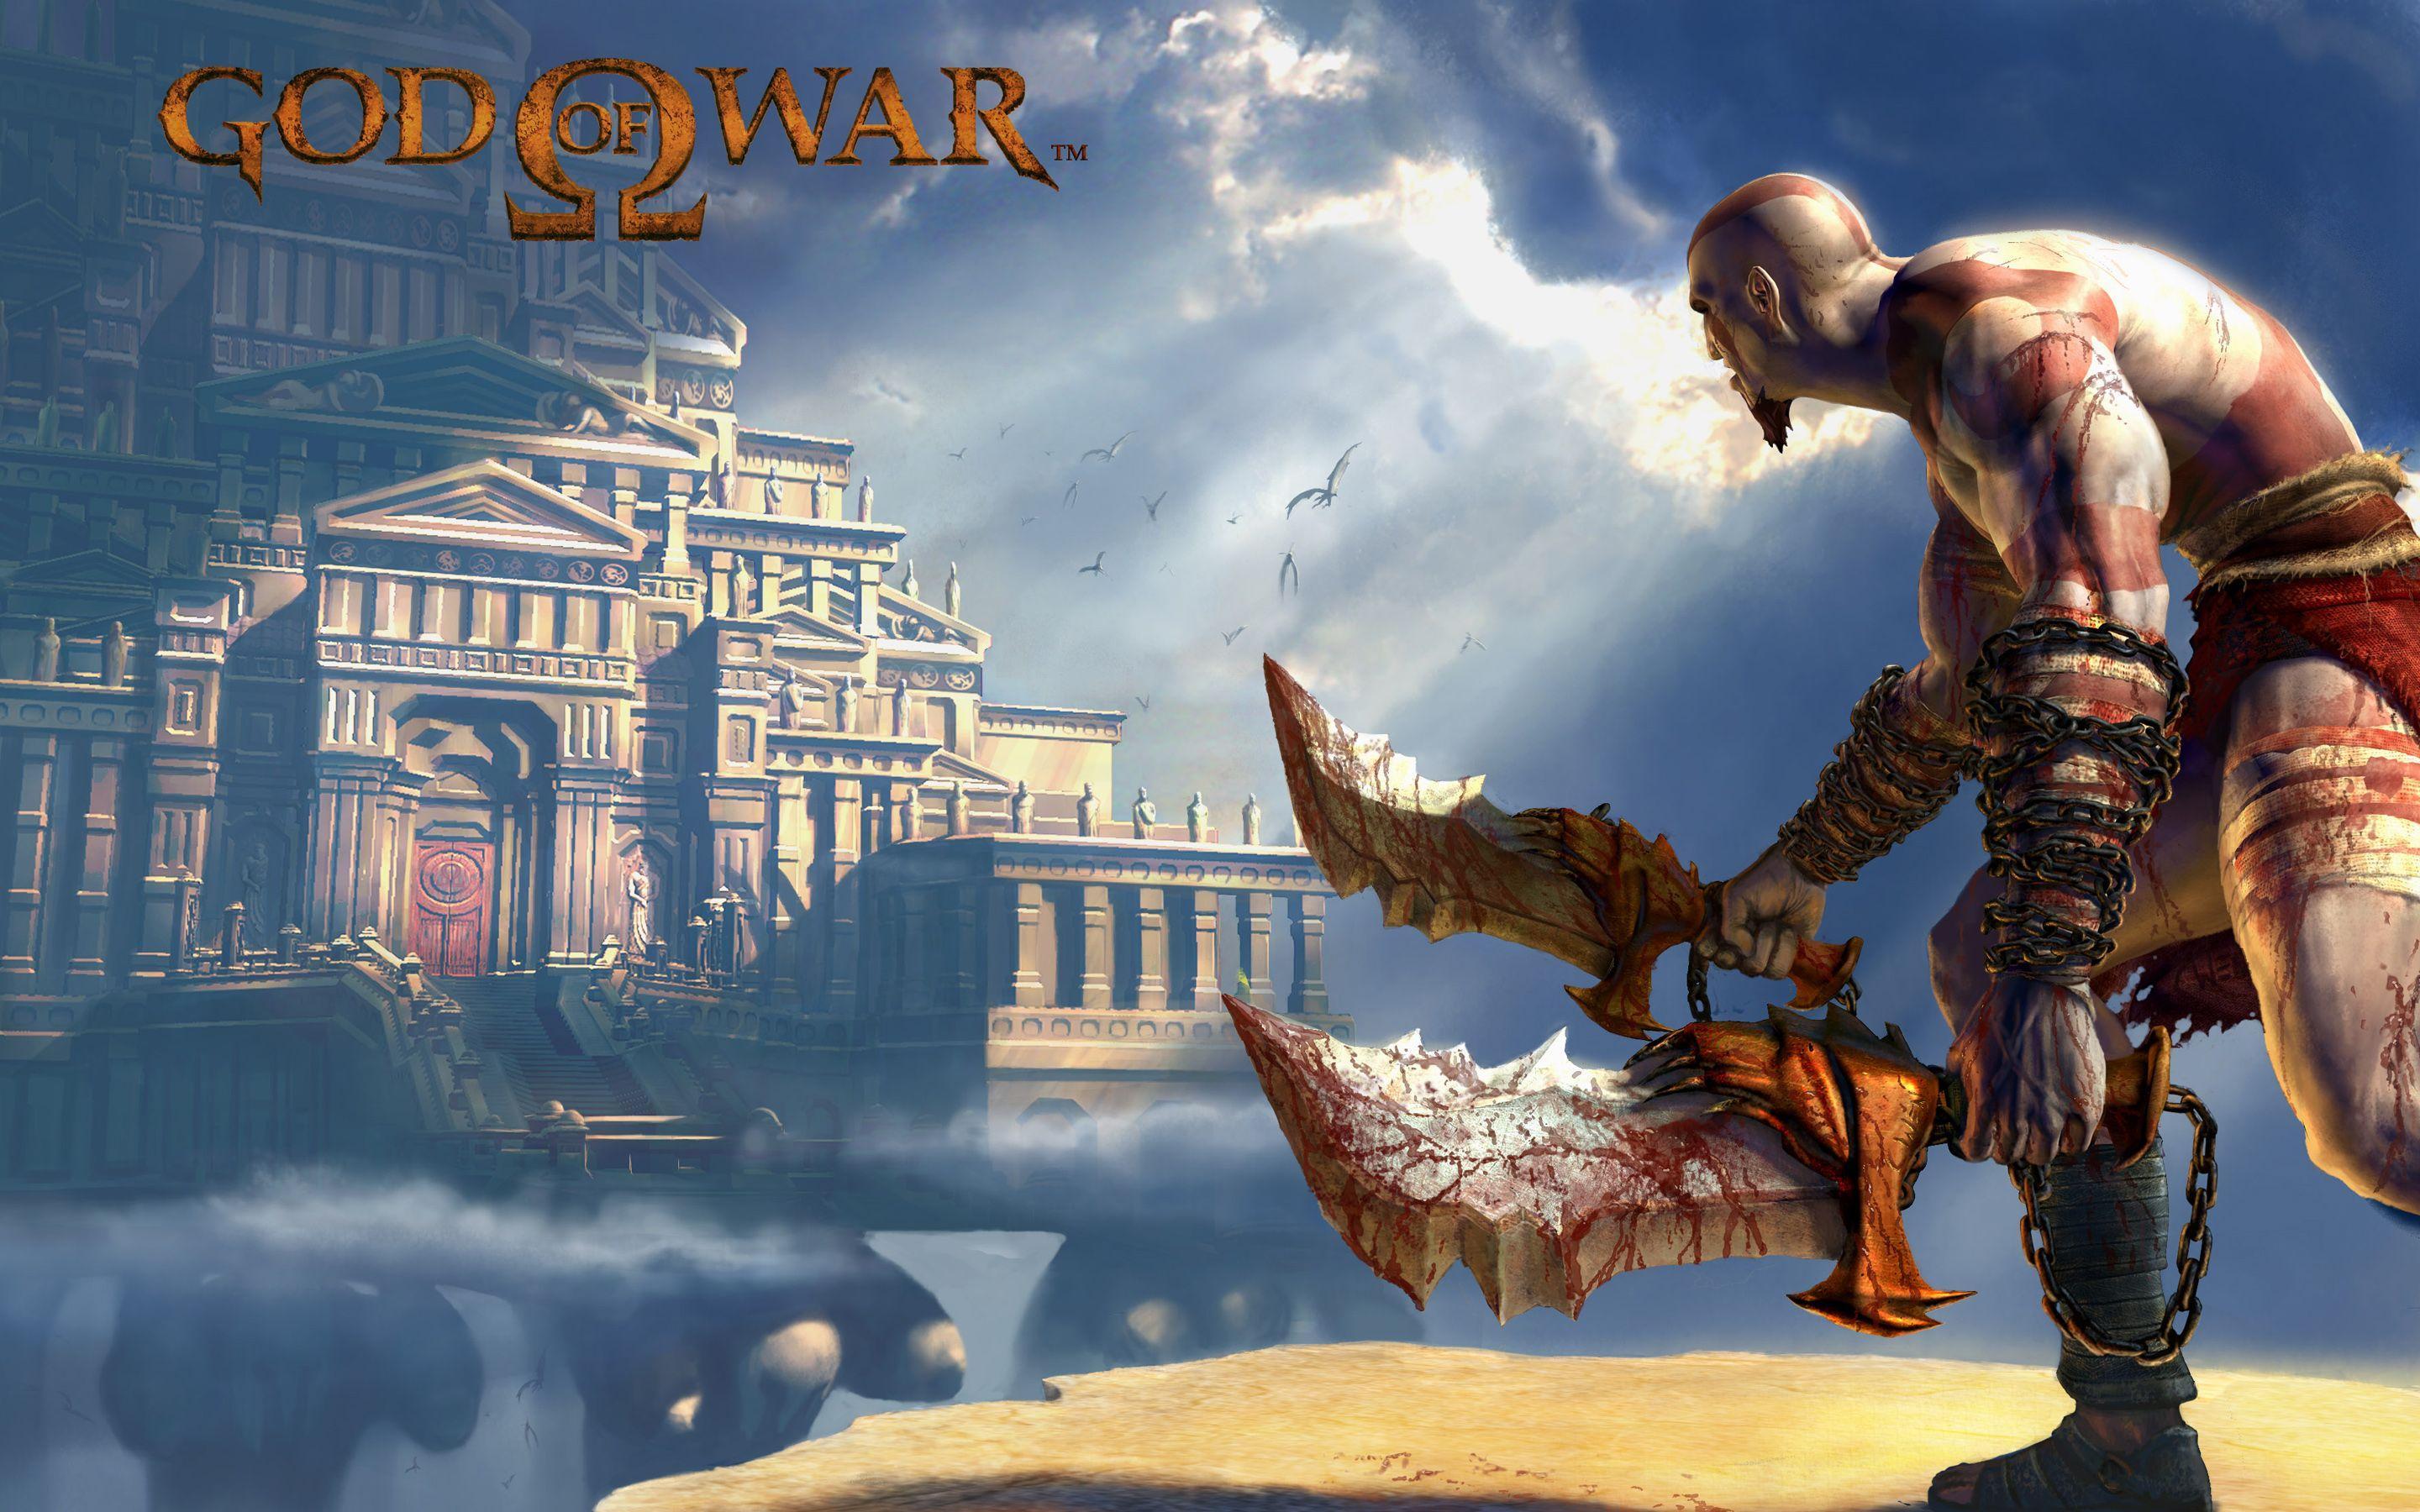 God of War 2 Game HD God of War 2 Game wallpaper is based